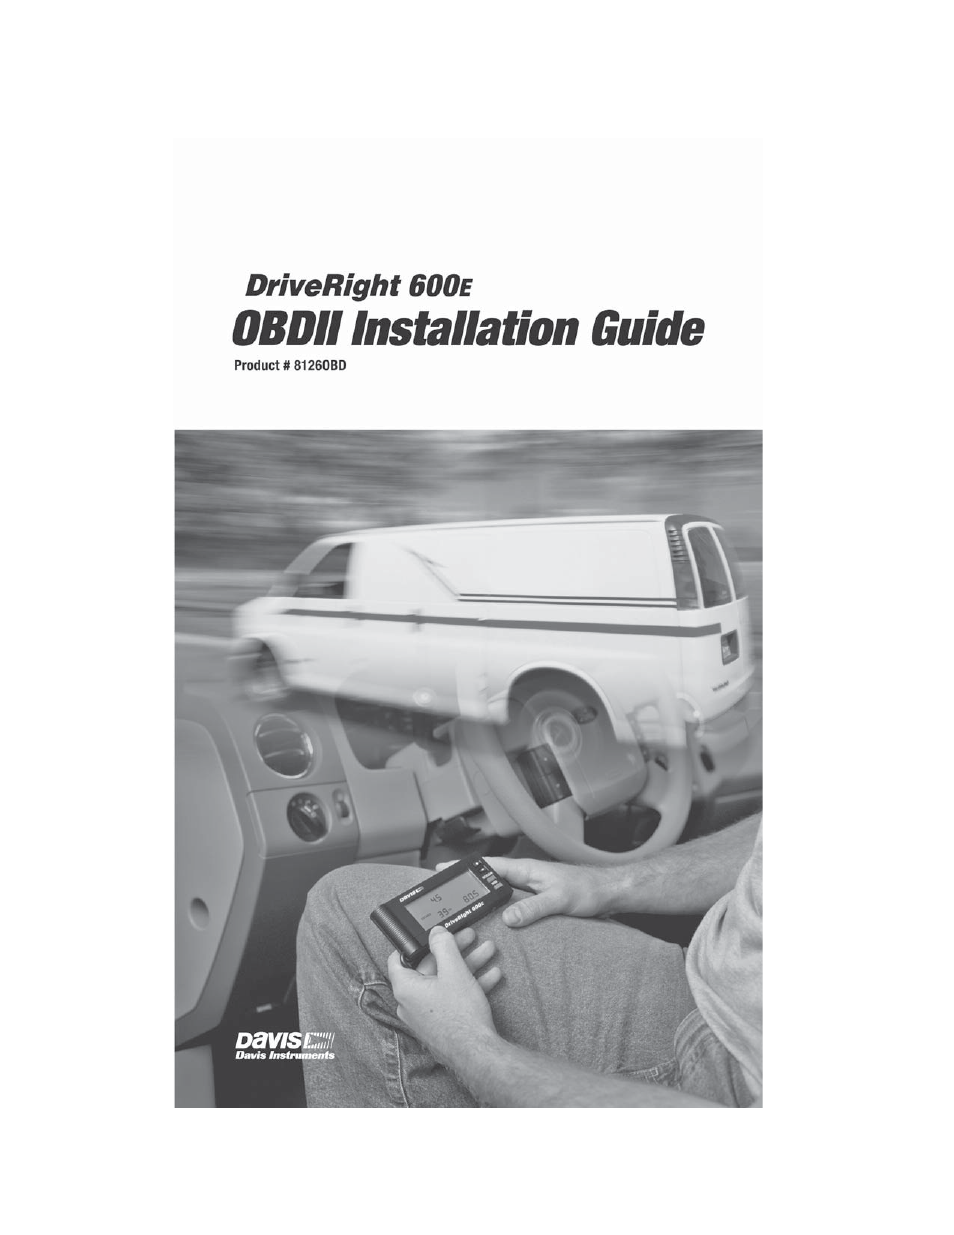 DriveRight 600E OBD Installation Guide (8126OBD)